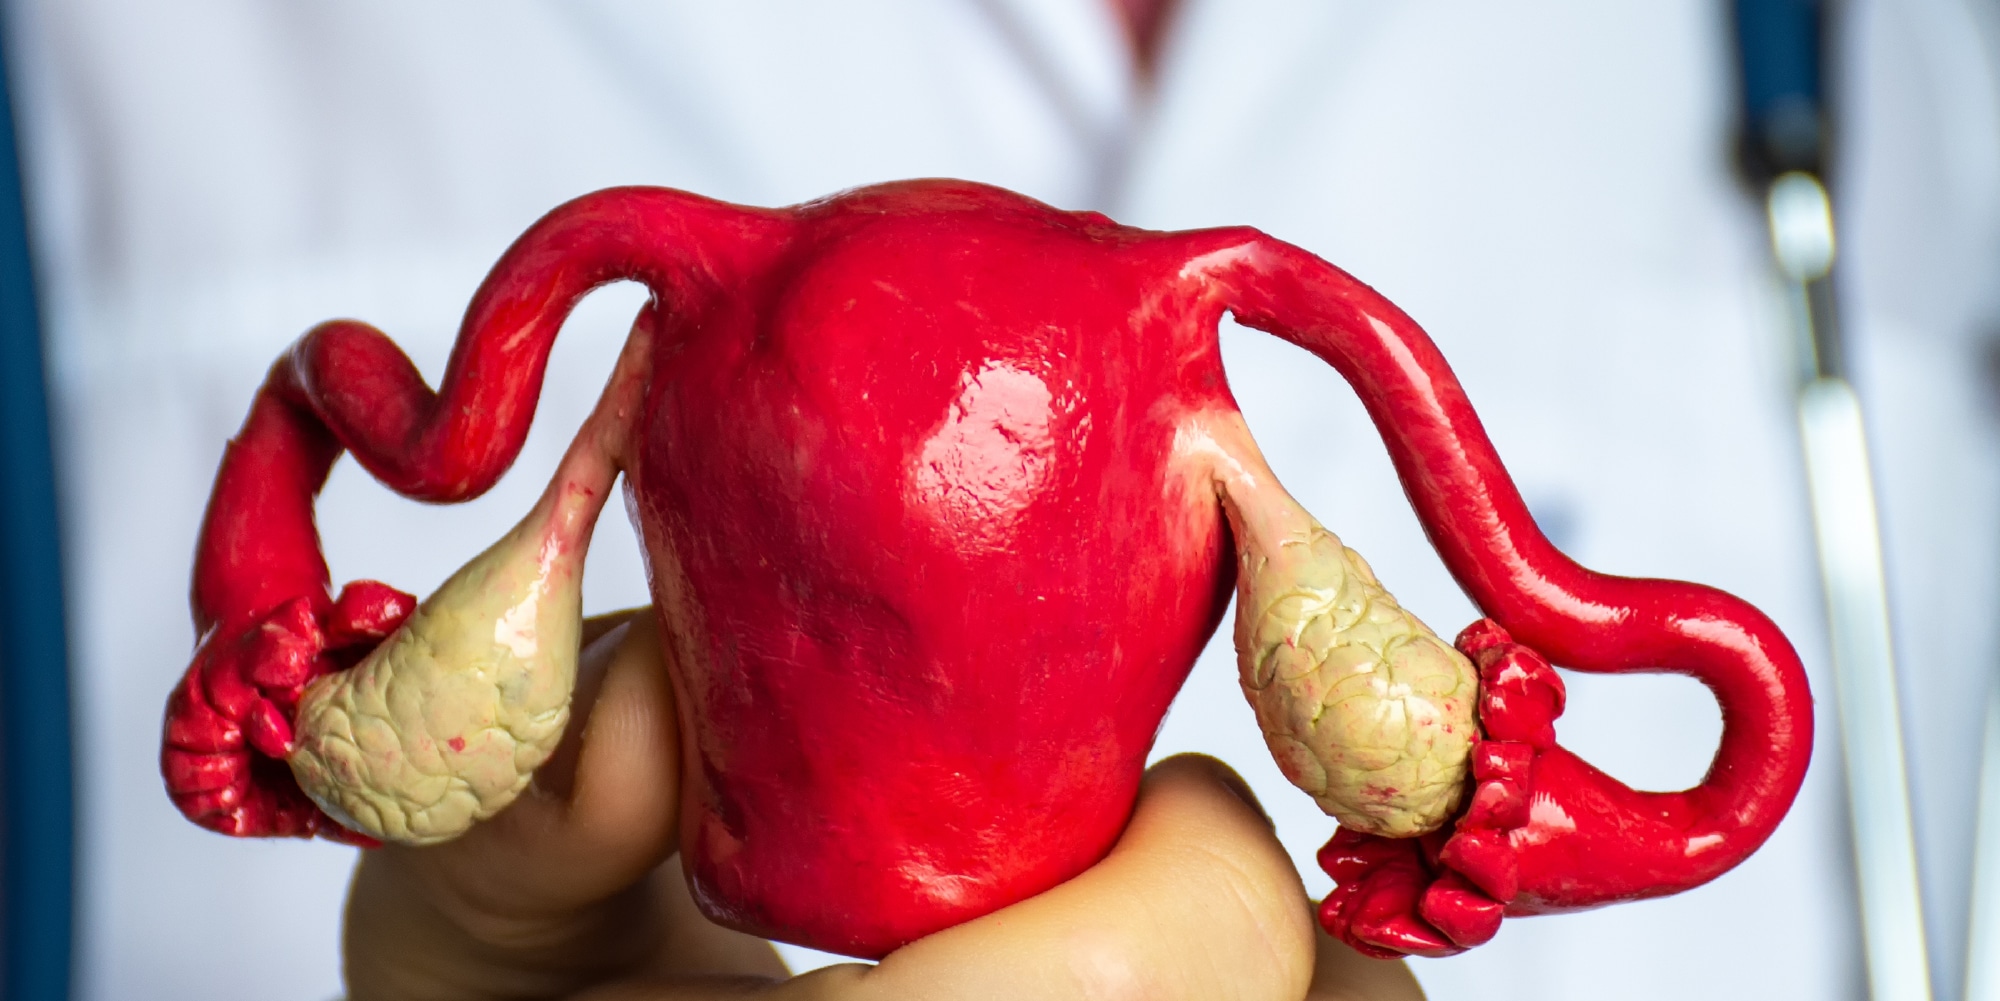 Malformações uterinas: como ocorrem?